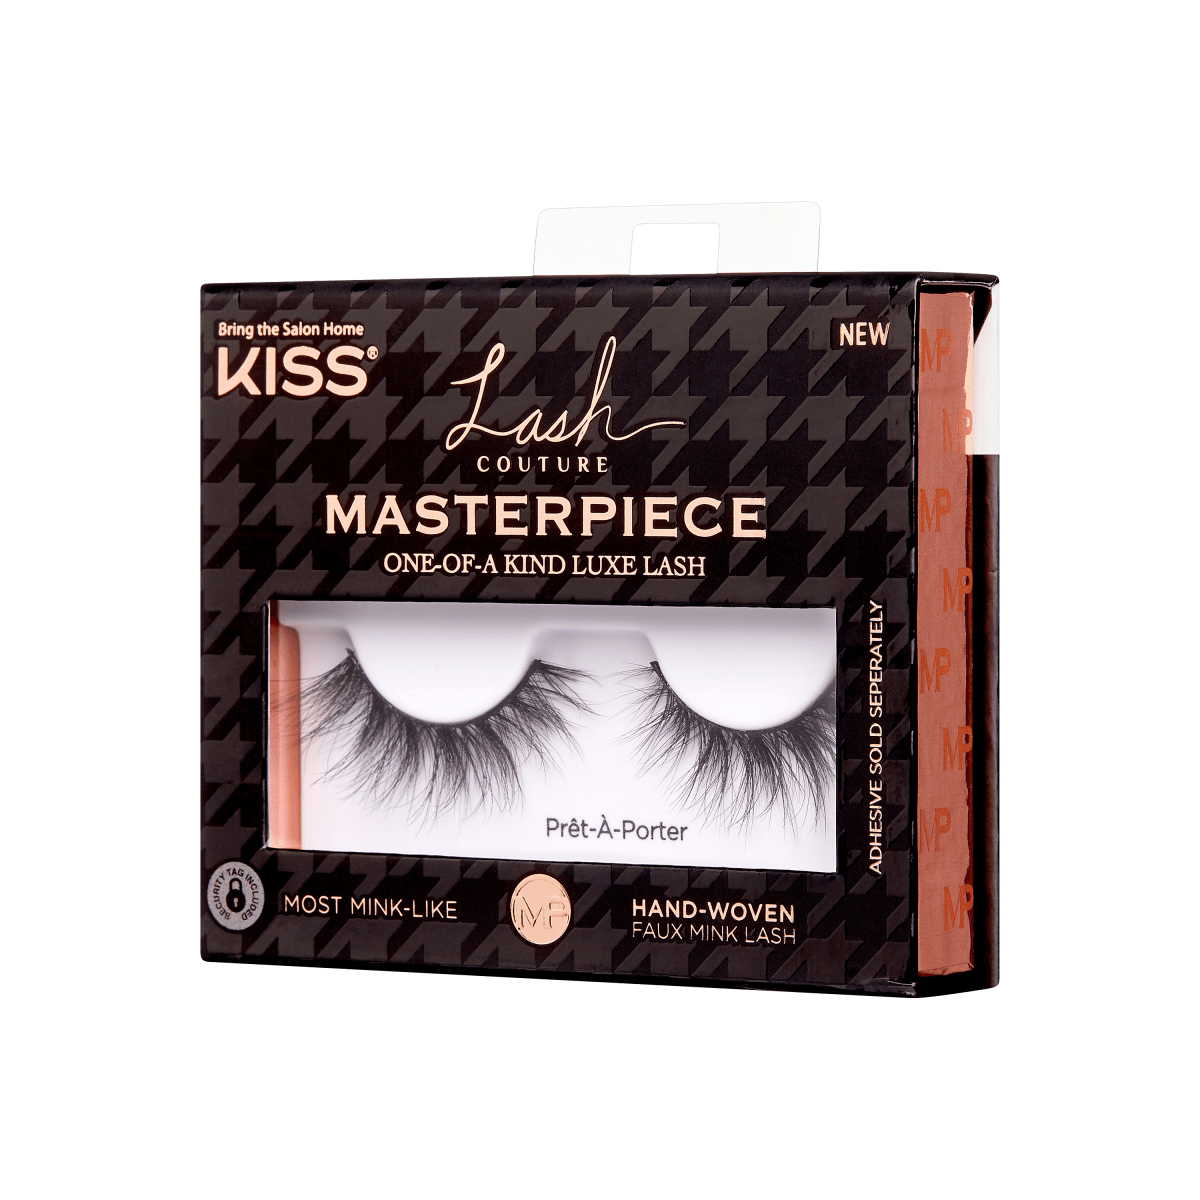 KISS Lash Couture Masterpiece Hand-Woven False Eyelashes, Prêt-À